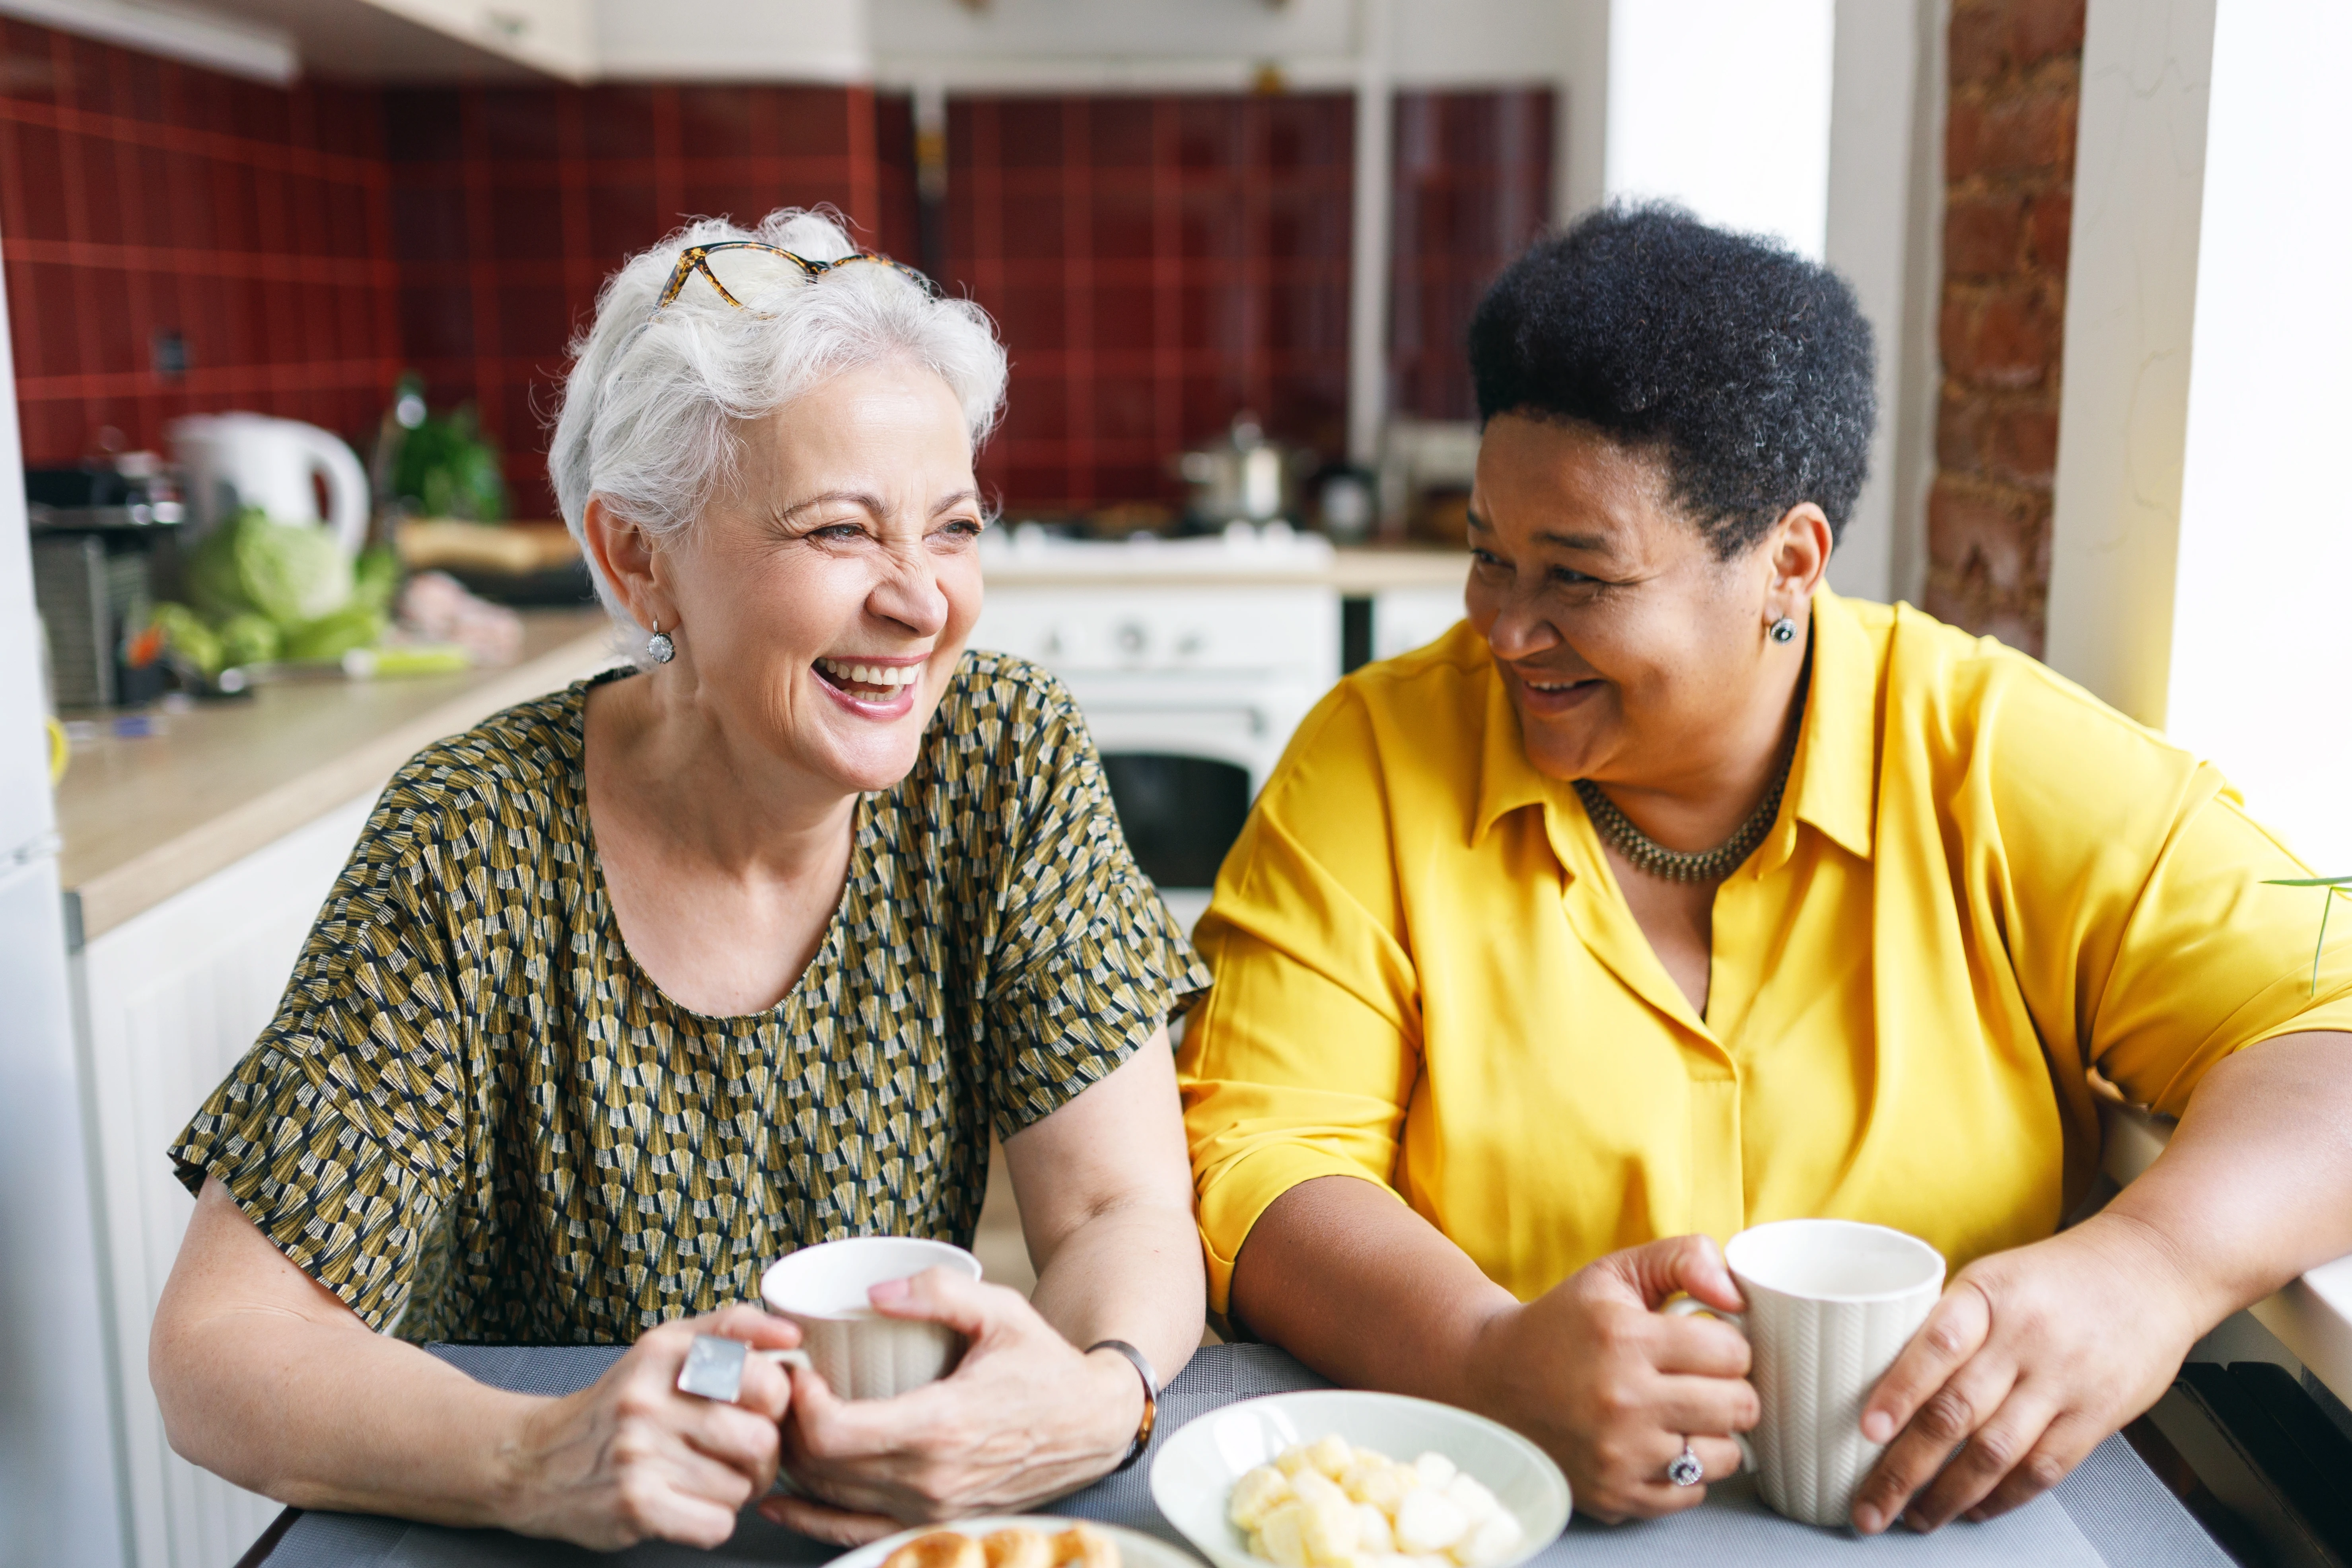 Twee aan een keukentafel zittende vrouwen lachen samen om een grappige situatie terwijl ze koffie met zoetigheid drinken